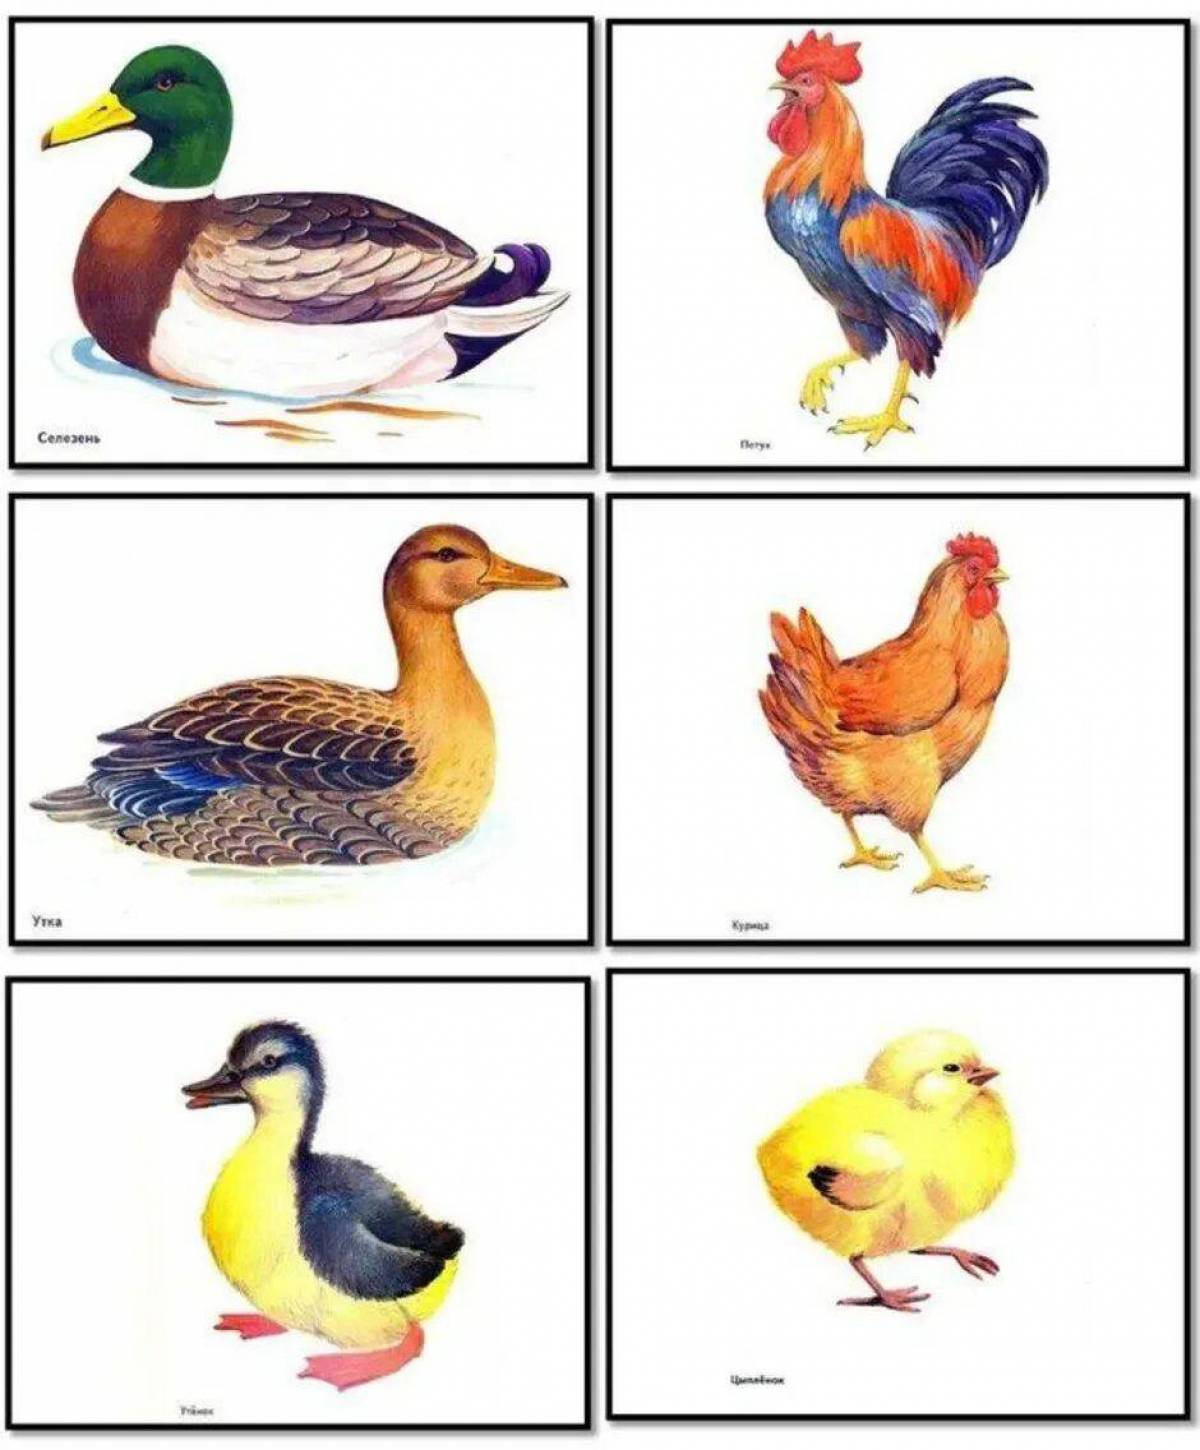 картинки на тему домашние птицы